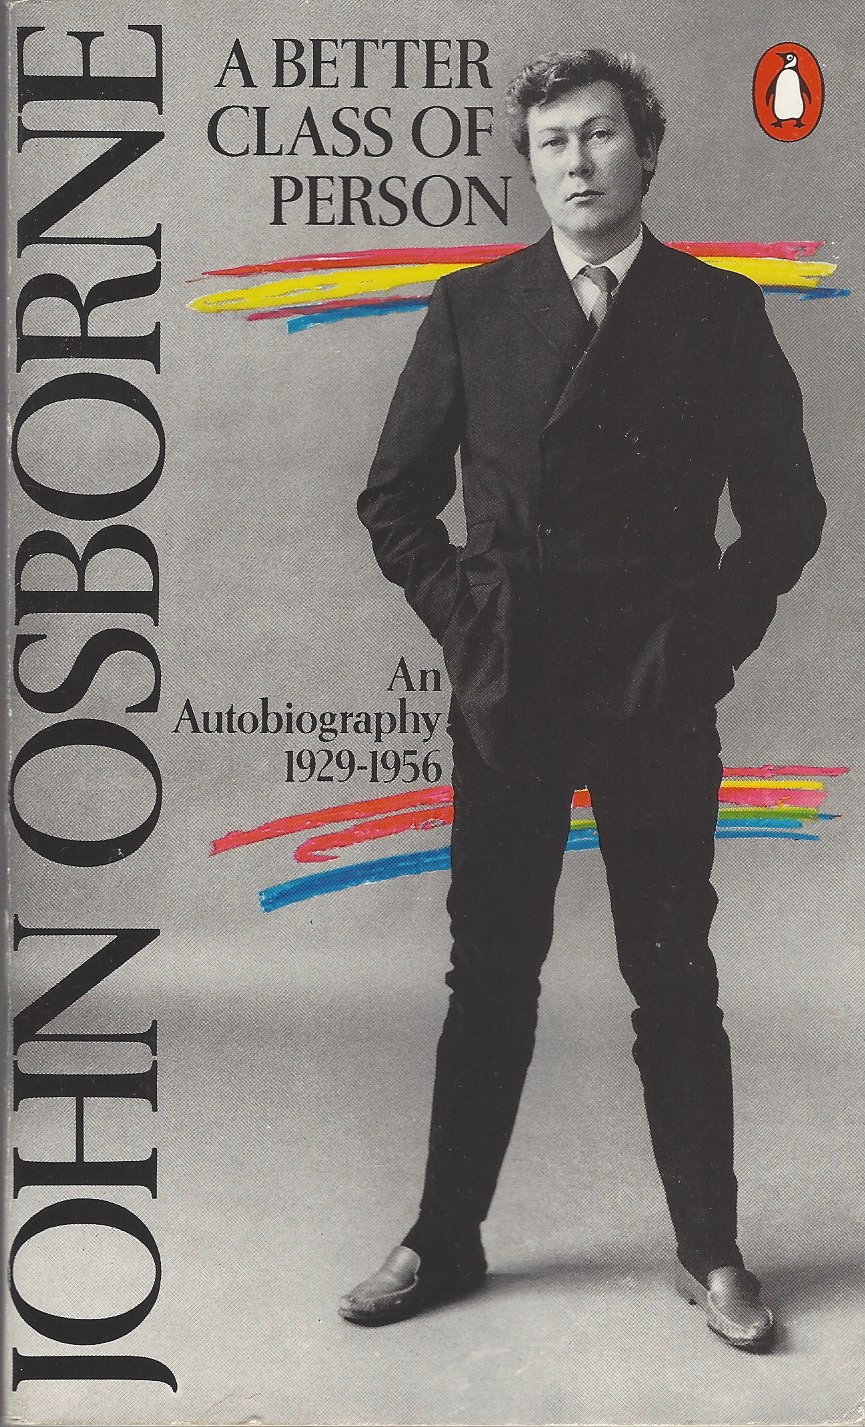 OSBORNE, JOHN - Better Class of Person an Autobiography, 1929-1956